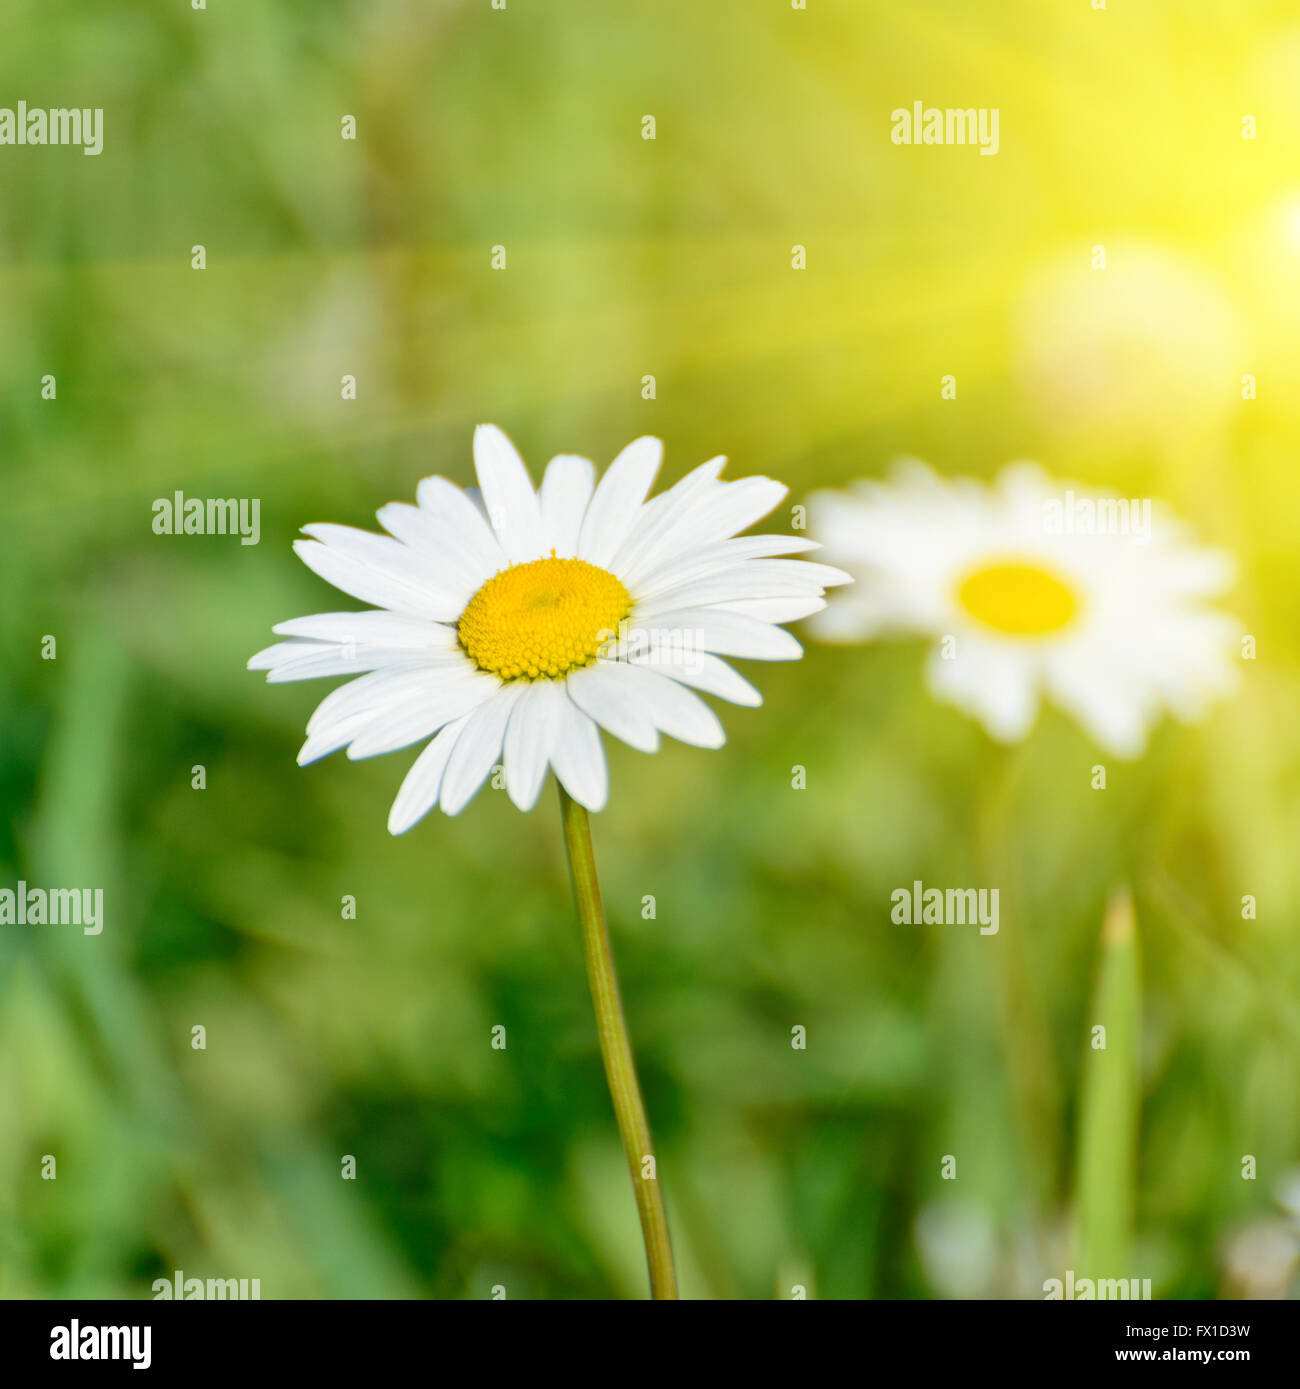 Natura floreale daisy sfondo astratto in verde e giallo Foto Stock